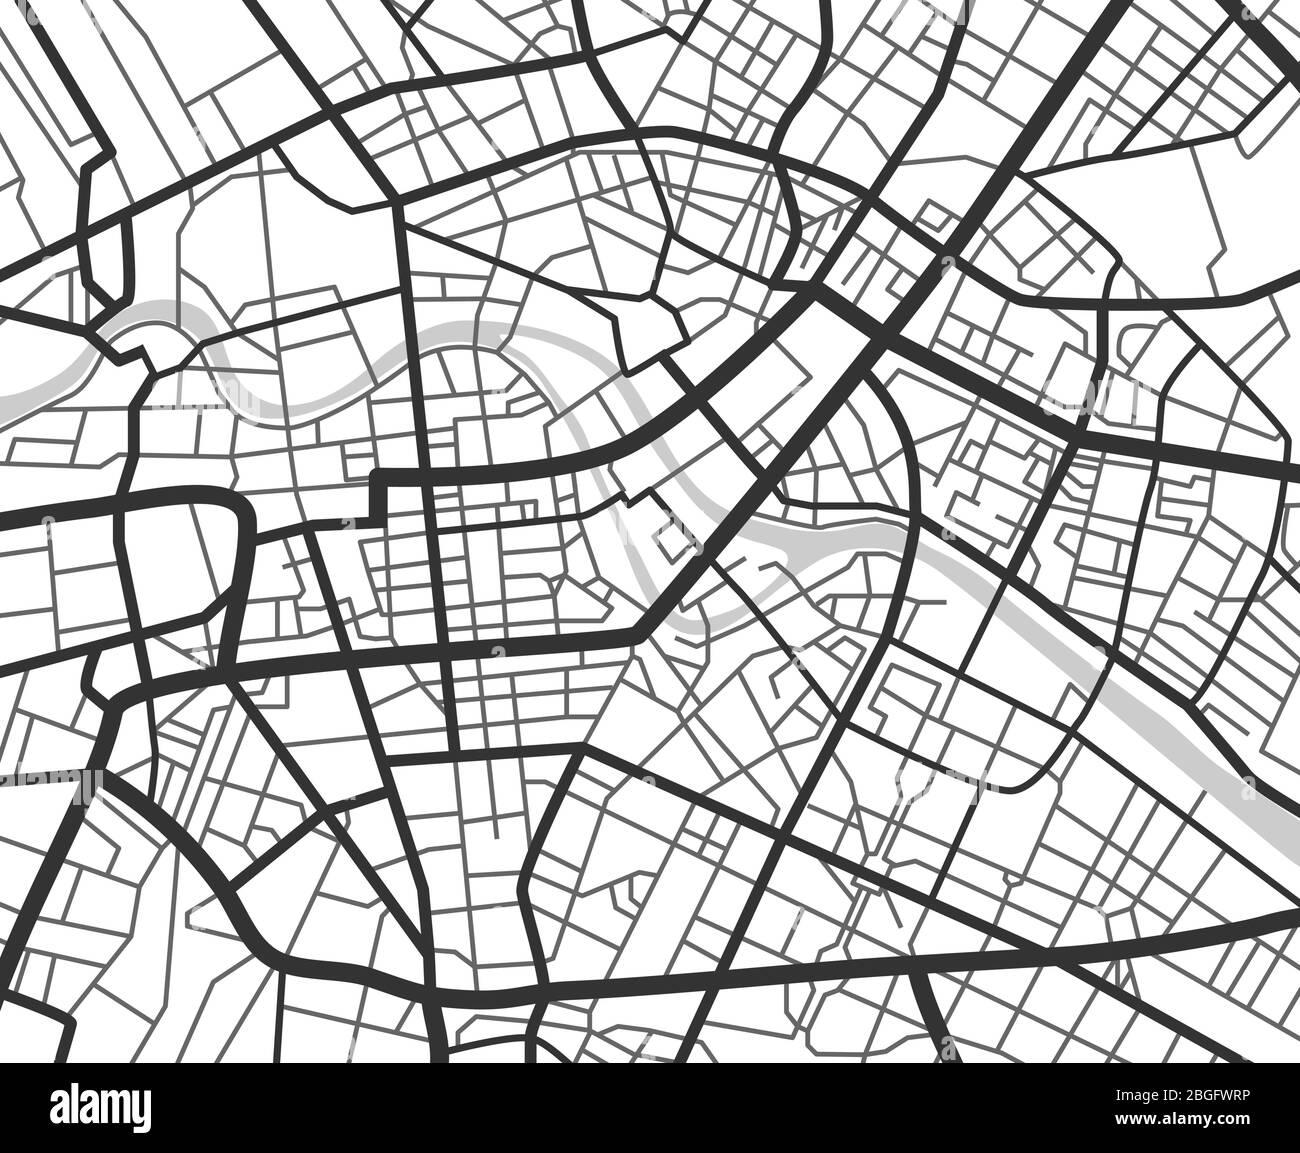 Carte de navigation abstraite avec lignes et rues. Plan vectoriel de planification urbaine noir et blanc. Illustration du plan de la carte routière, navigation graphique routière Illustration de Vecteur